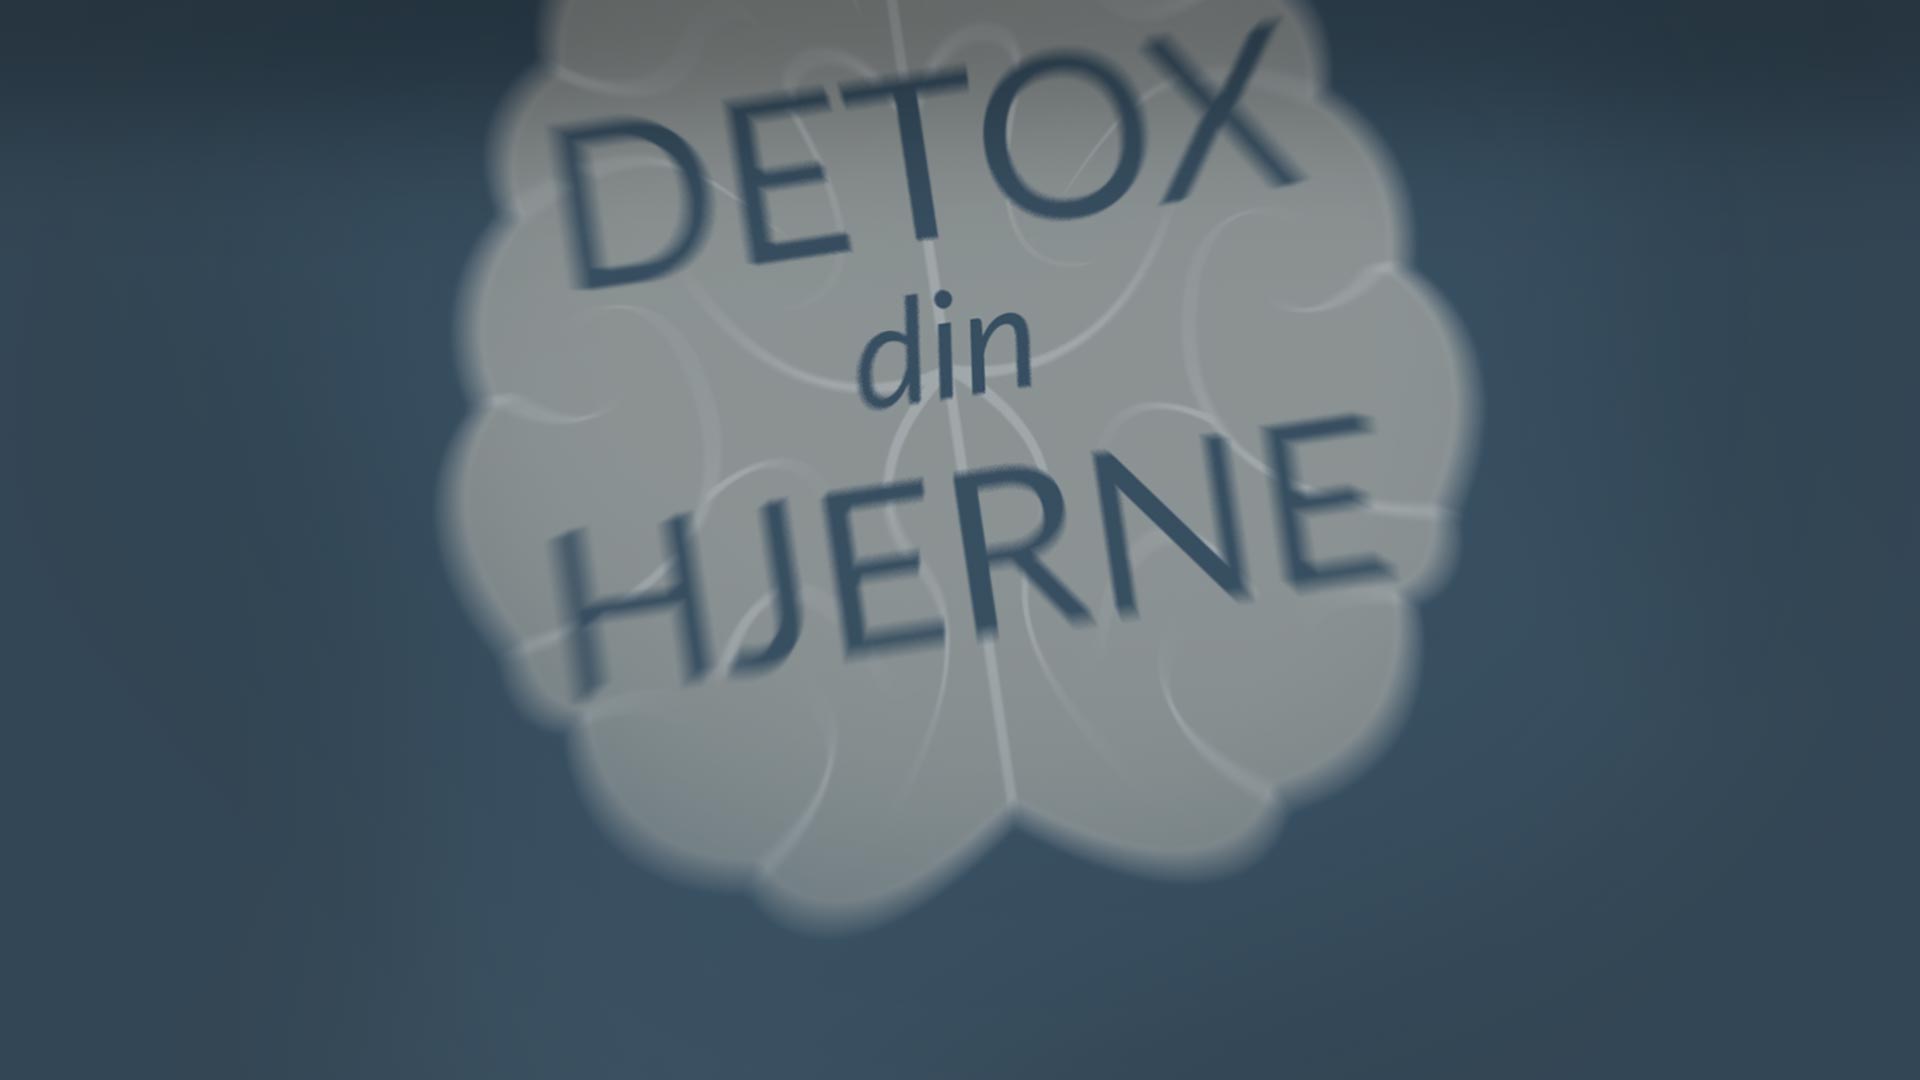 Detox din hjerne<sup>TM</sup>